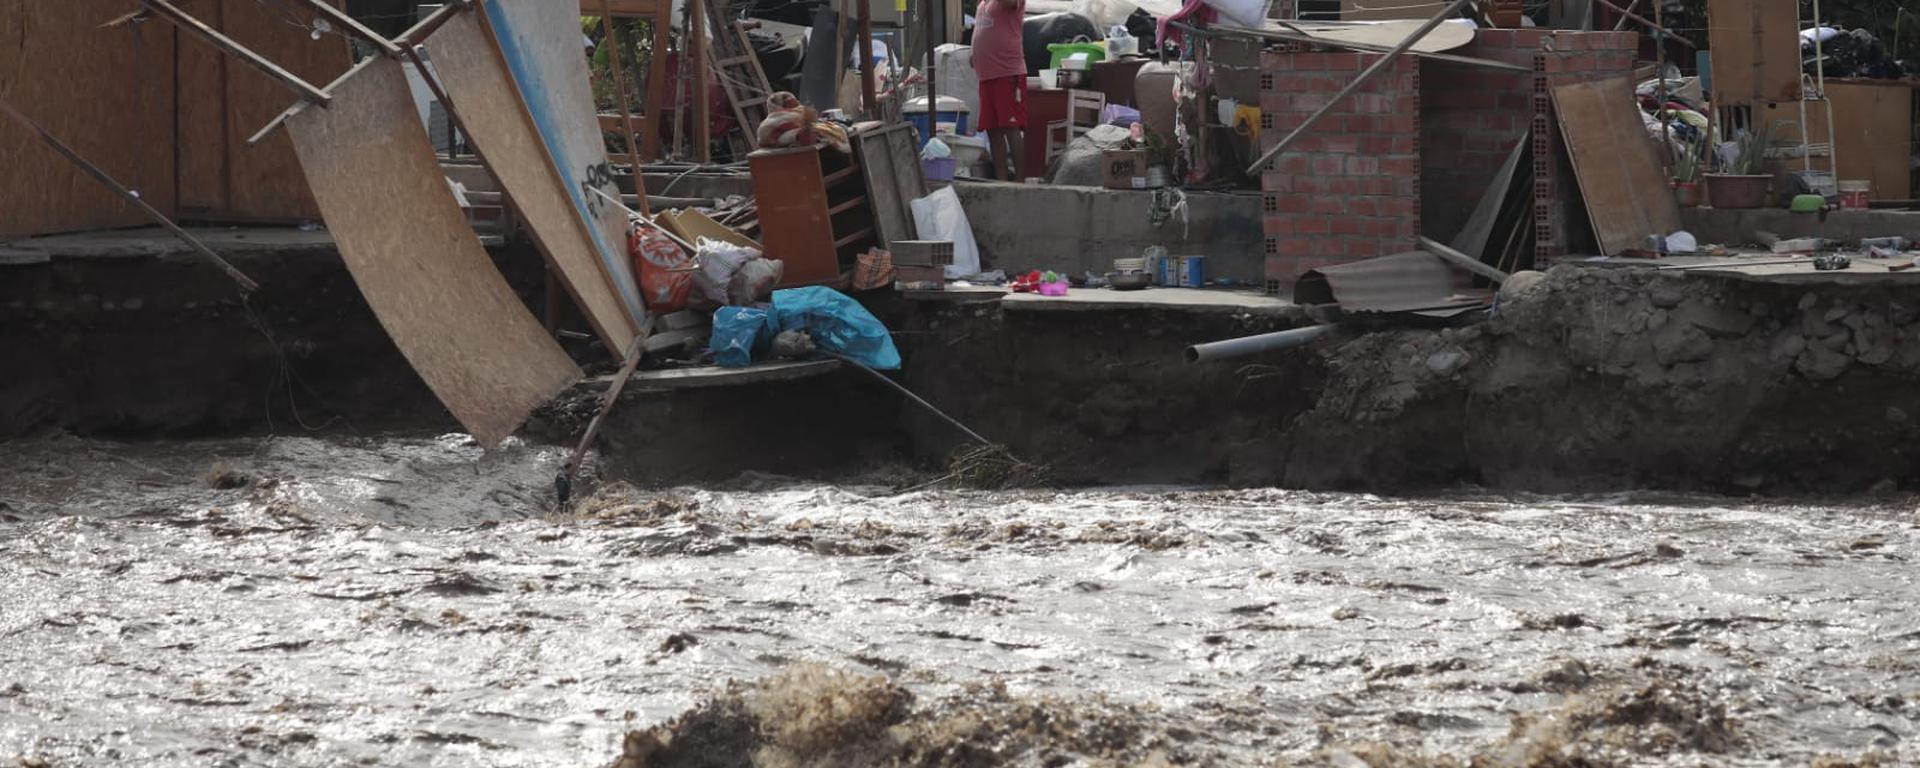 Pronóstico de lluvias: ¿Qué distritos serán los más afectados en Lima y en el norte del Perú durante los próximos días?  